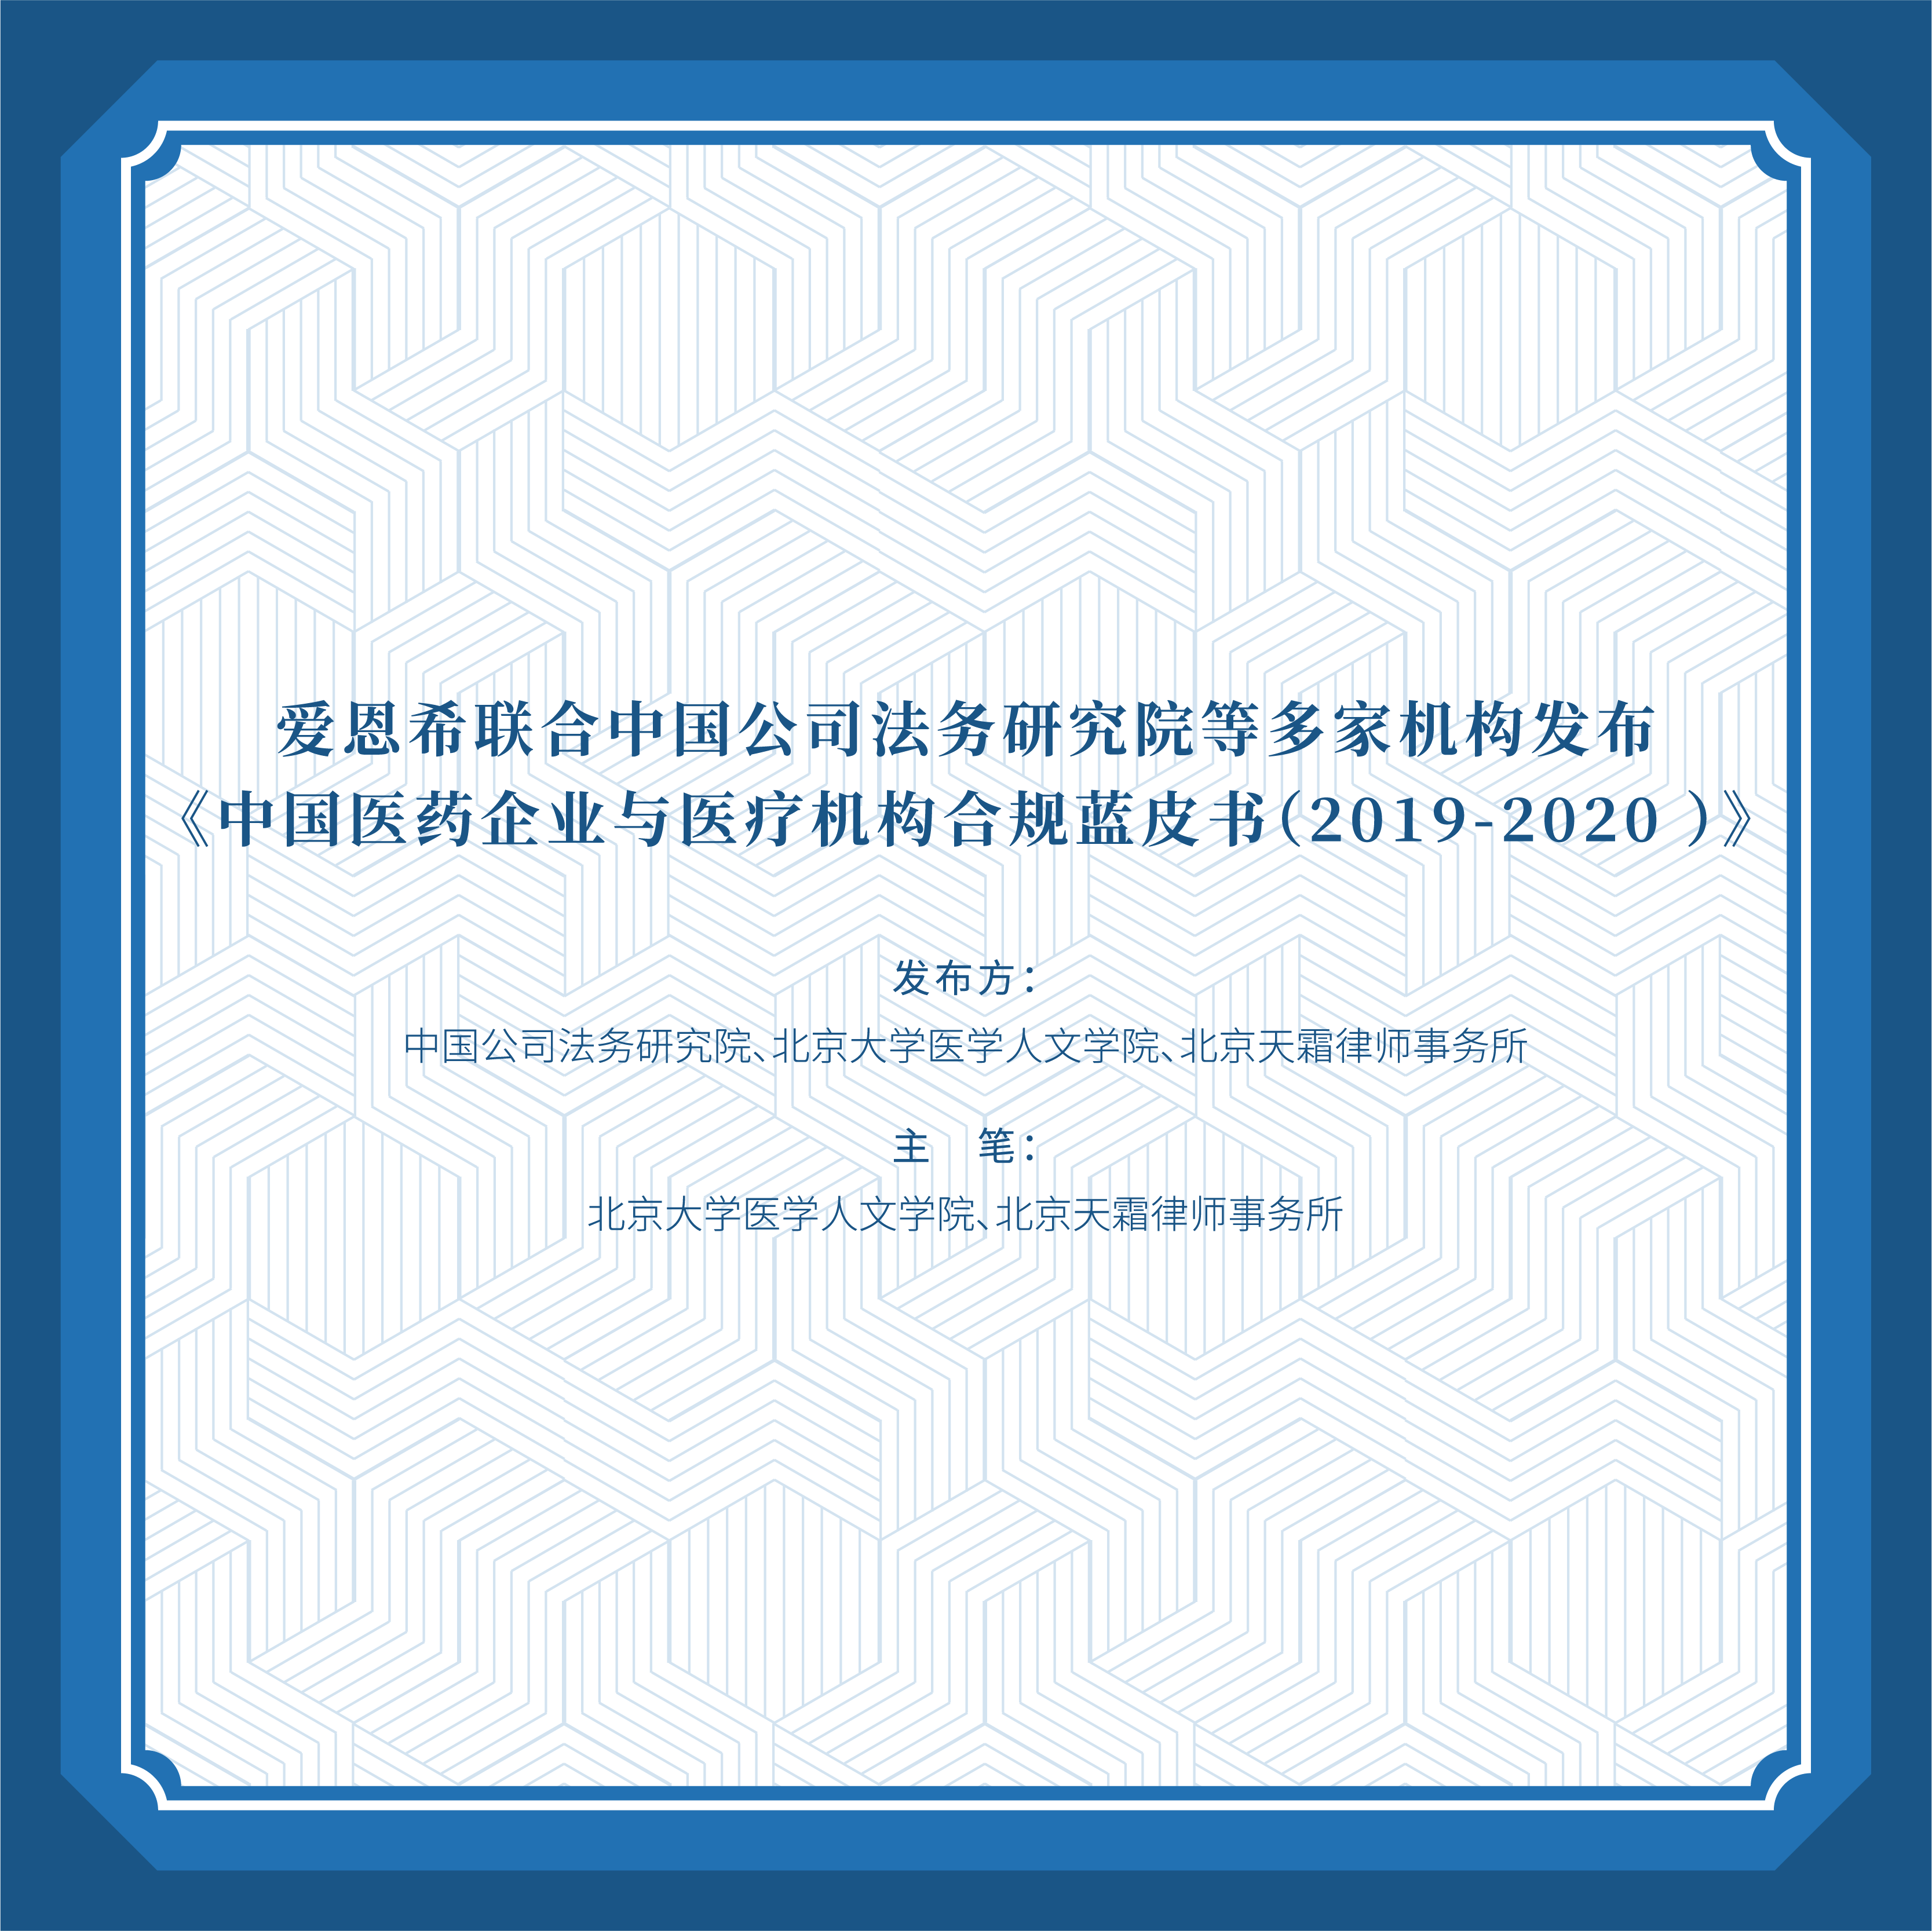 <b>爱恩希联合中国公司法务研究院等机构发布《中国医药企业与医疗机构合规蓝皮</b>